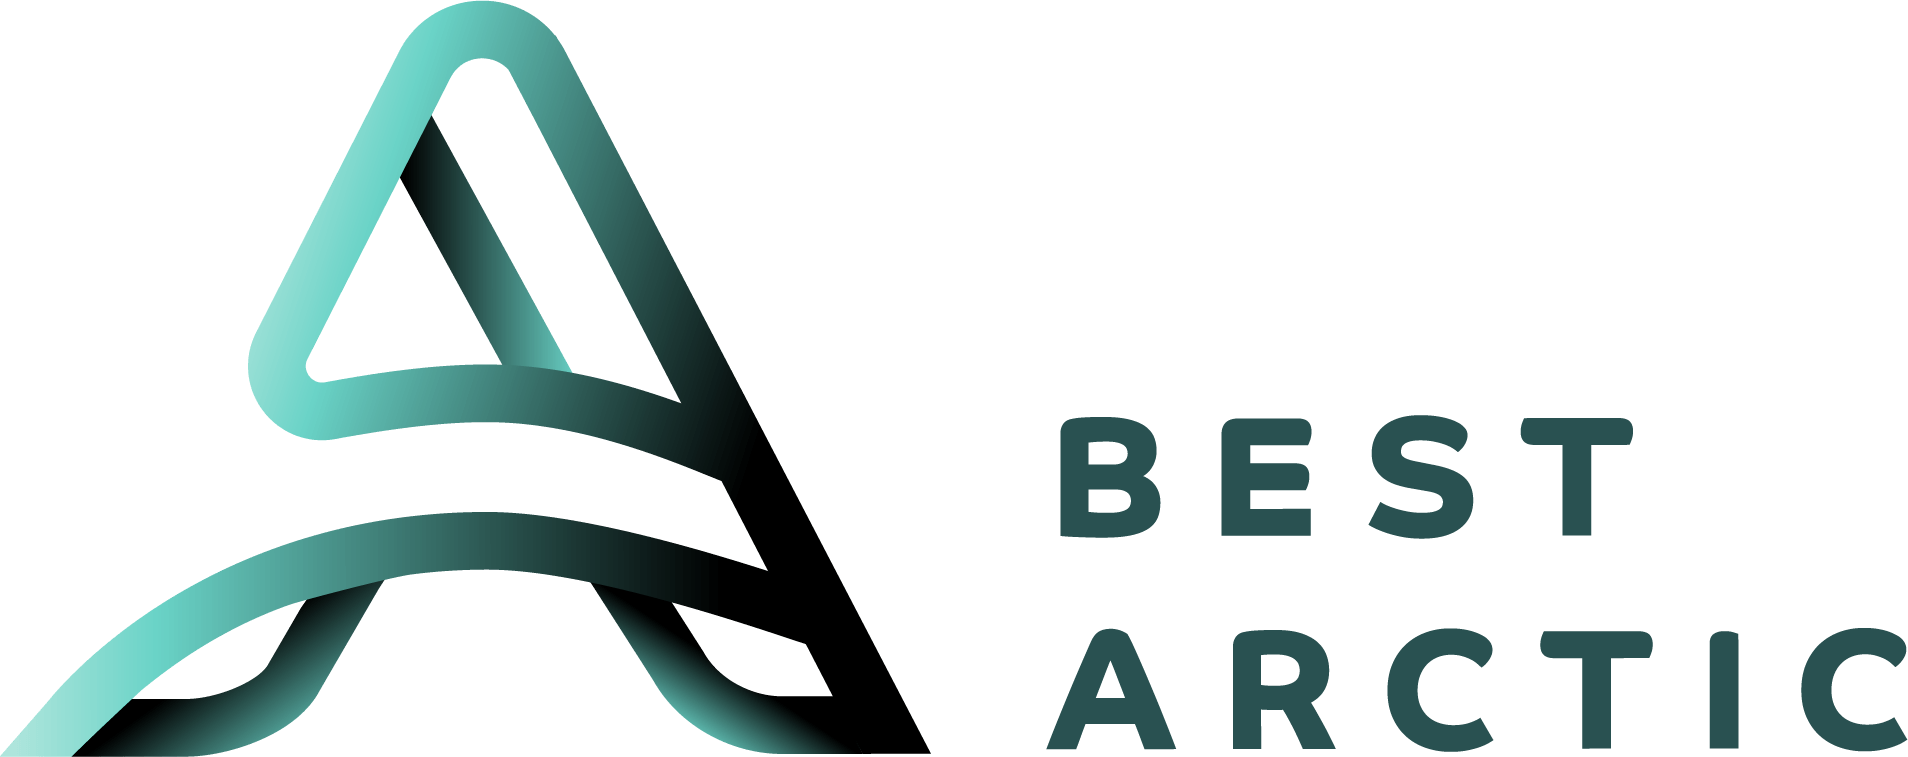 Best Arctic Logo